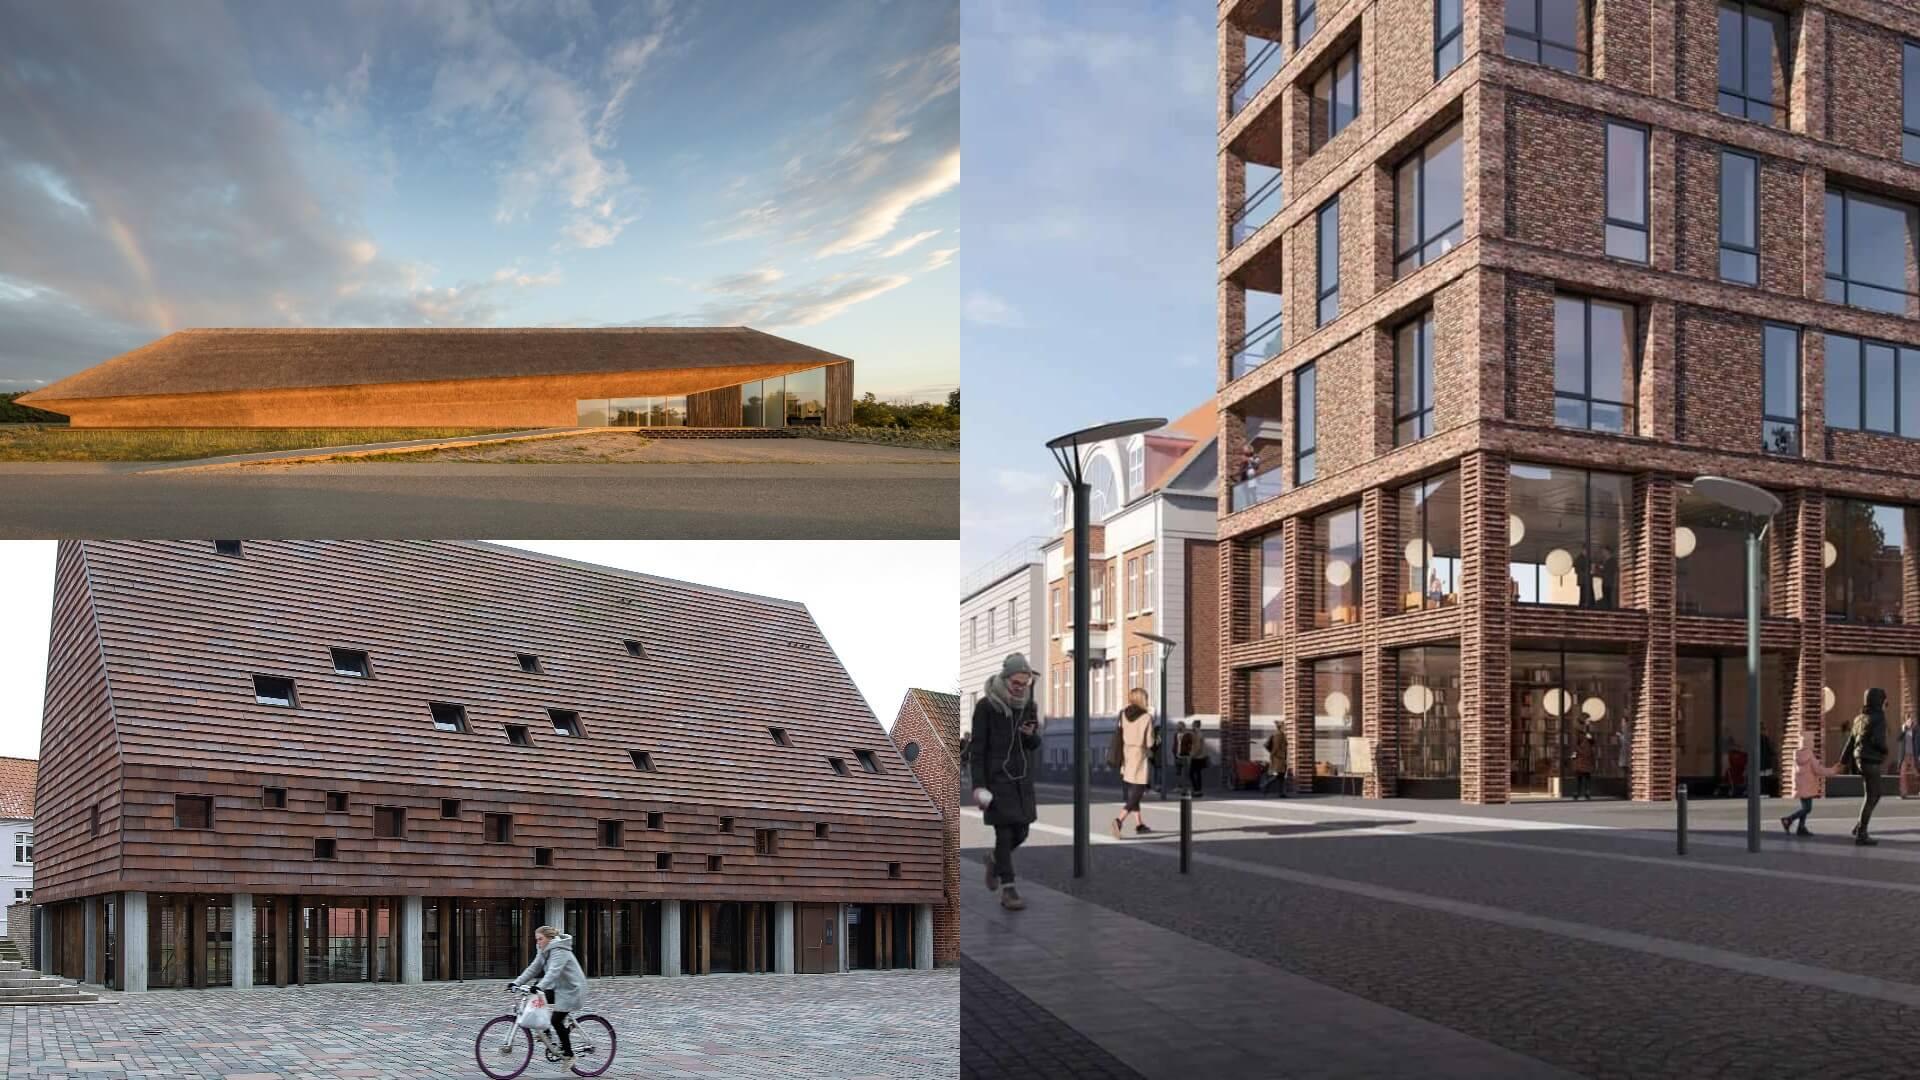 Esbjerg Kommune er hjem for mange særegne bygninger. Særligt Vadehavscentret tegnet af Dorte Mandrup skiller sig ud fra mængden.